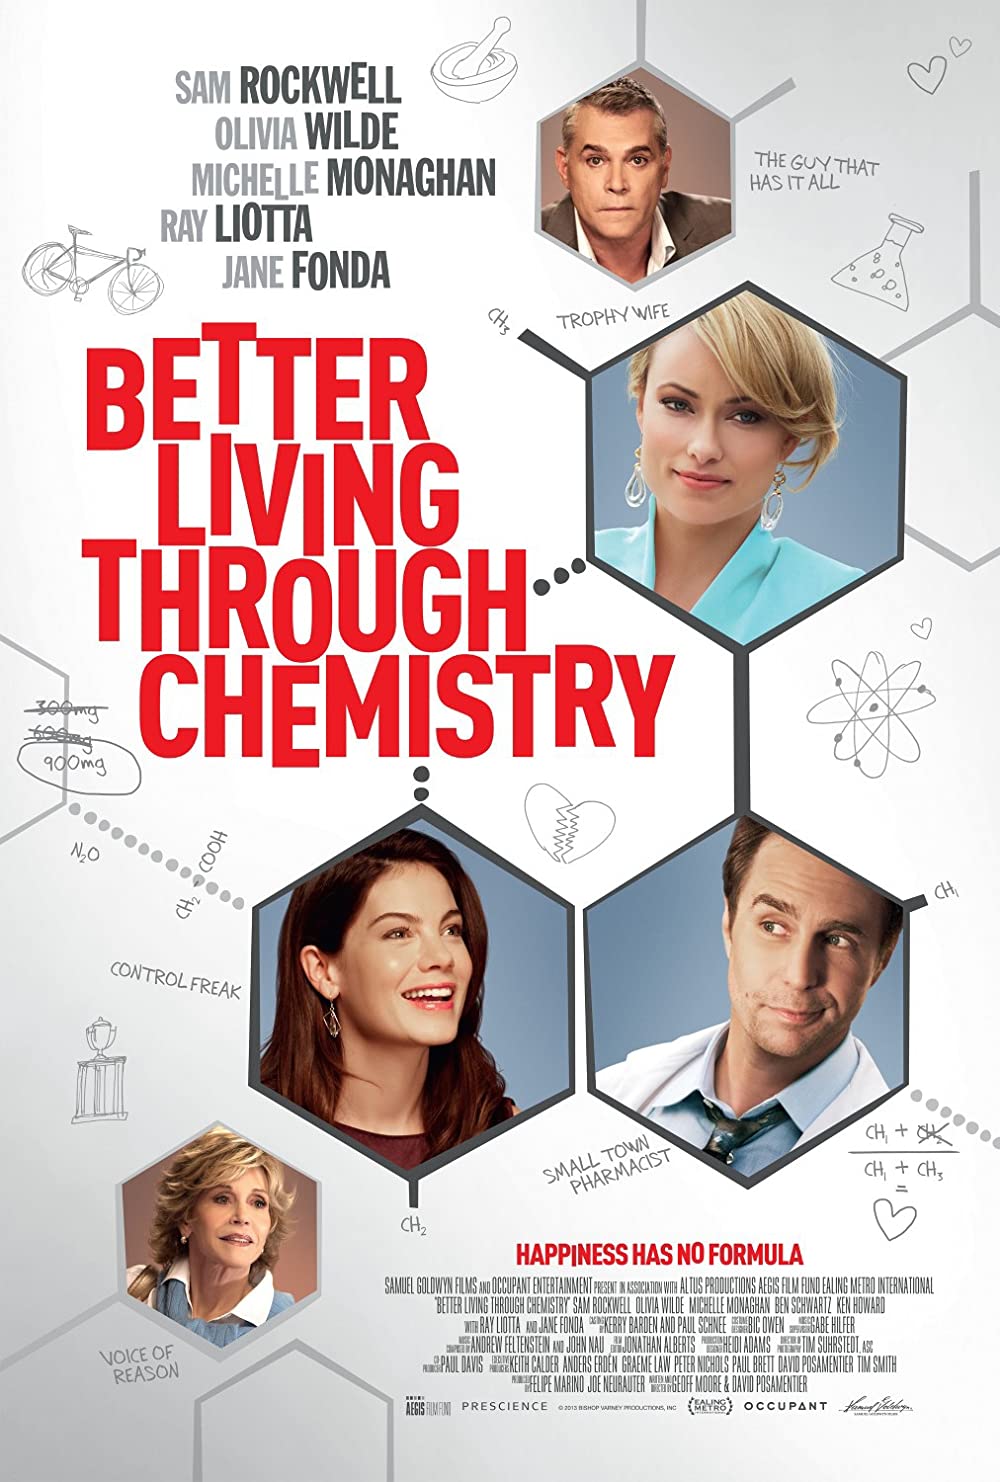 Filmbeschreibung zu Better Living Through Chemistry